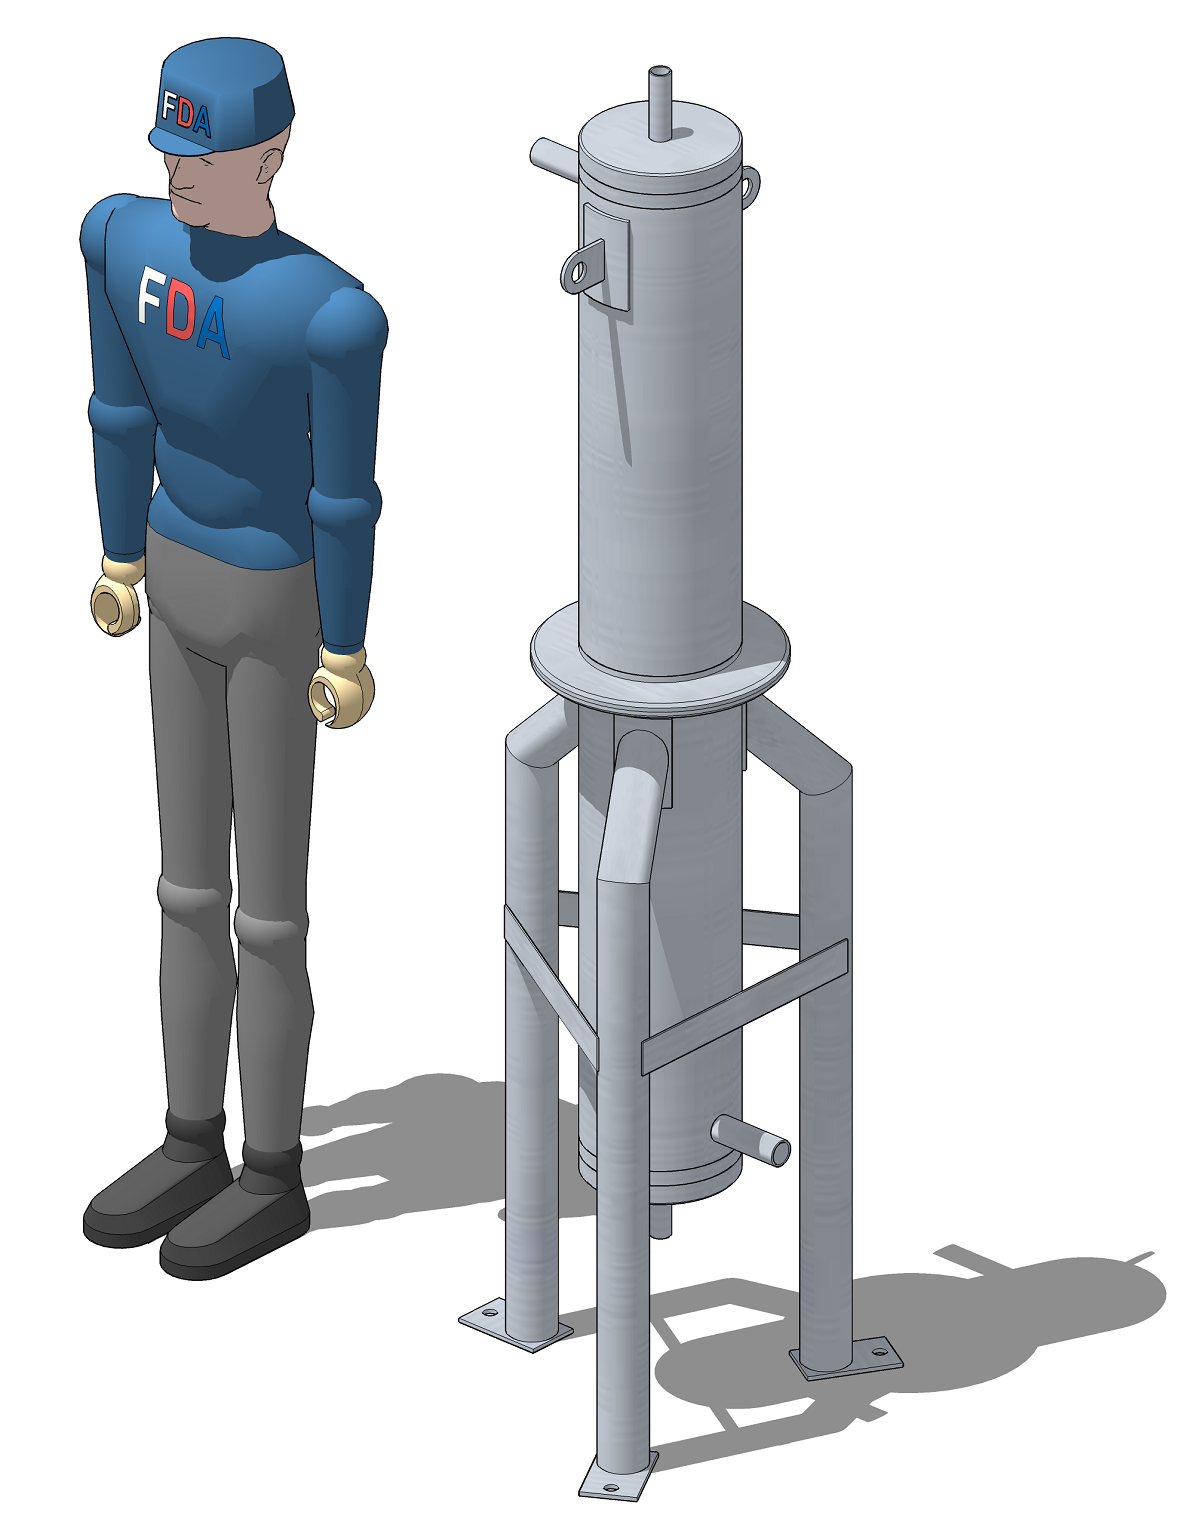 3D модель промышленного холодильника для охлаждения газовых смесей российского производства